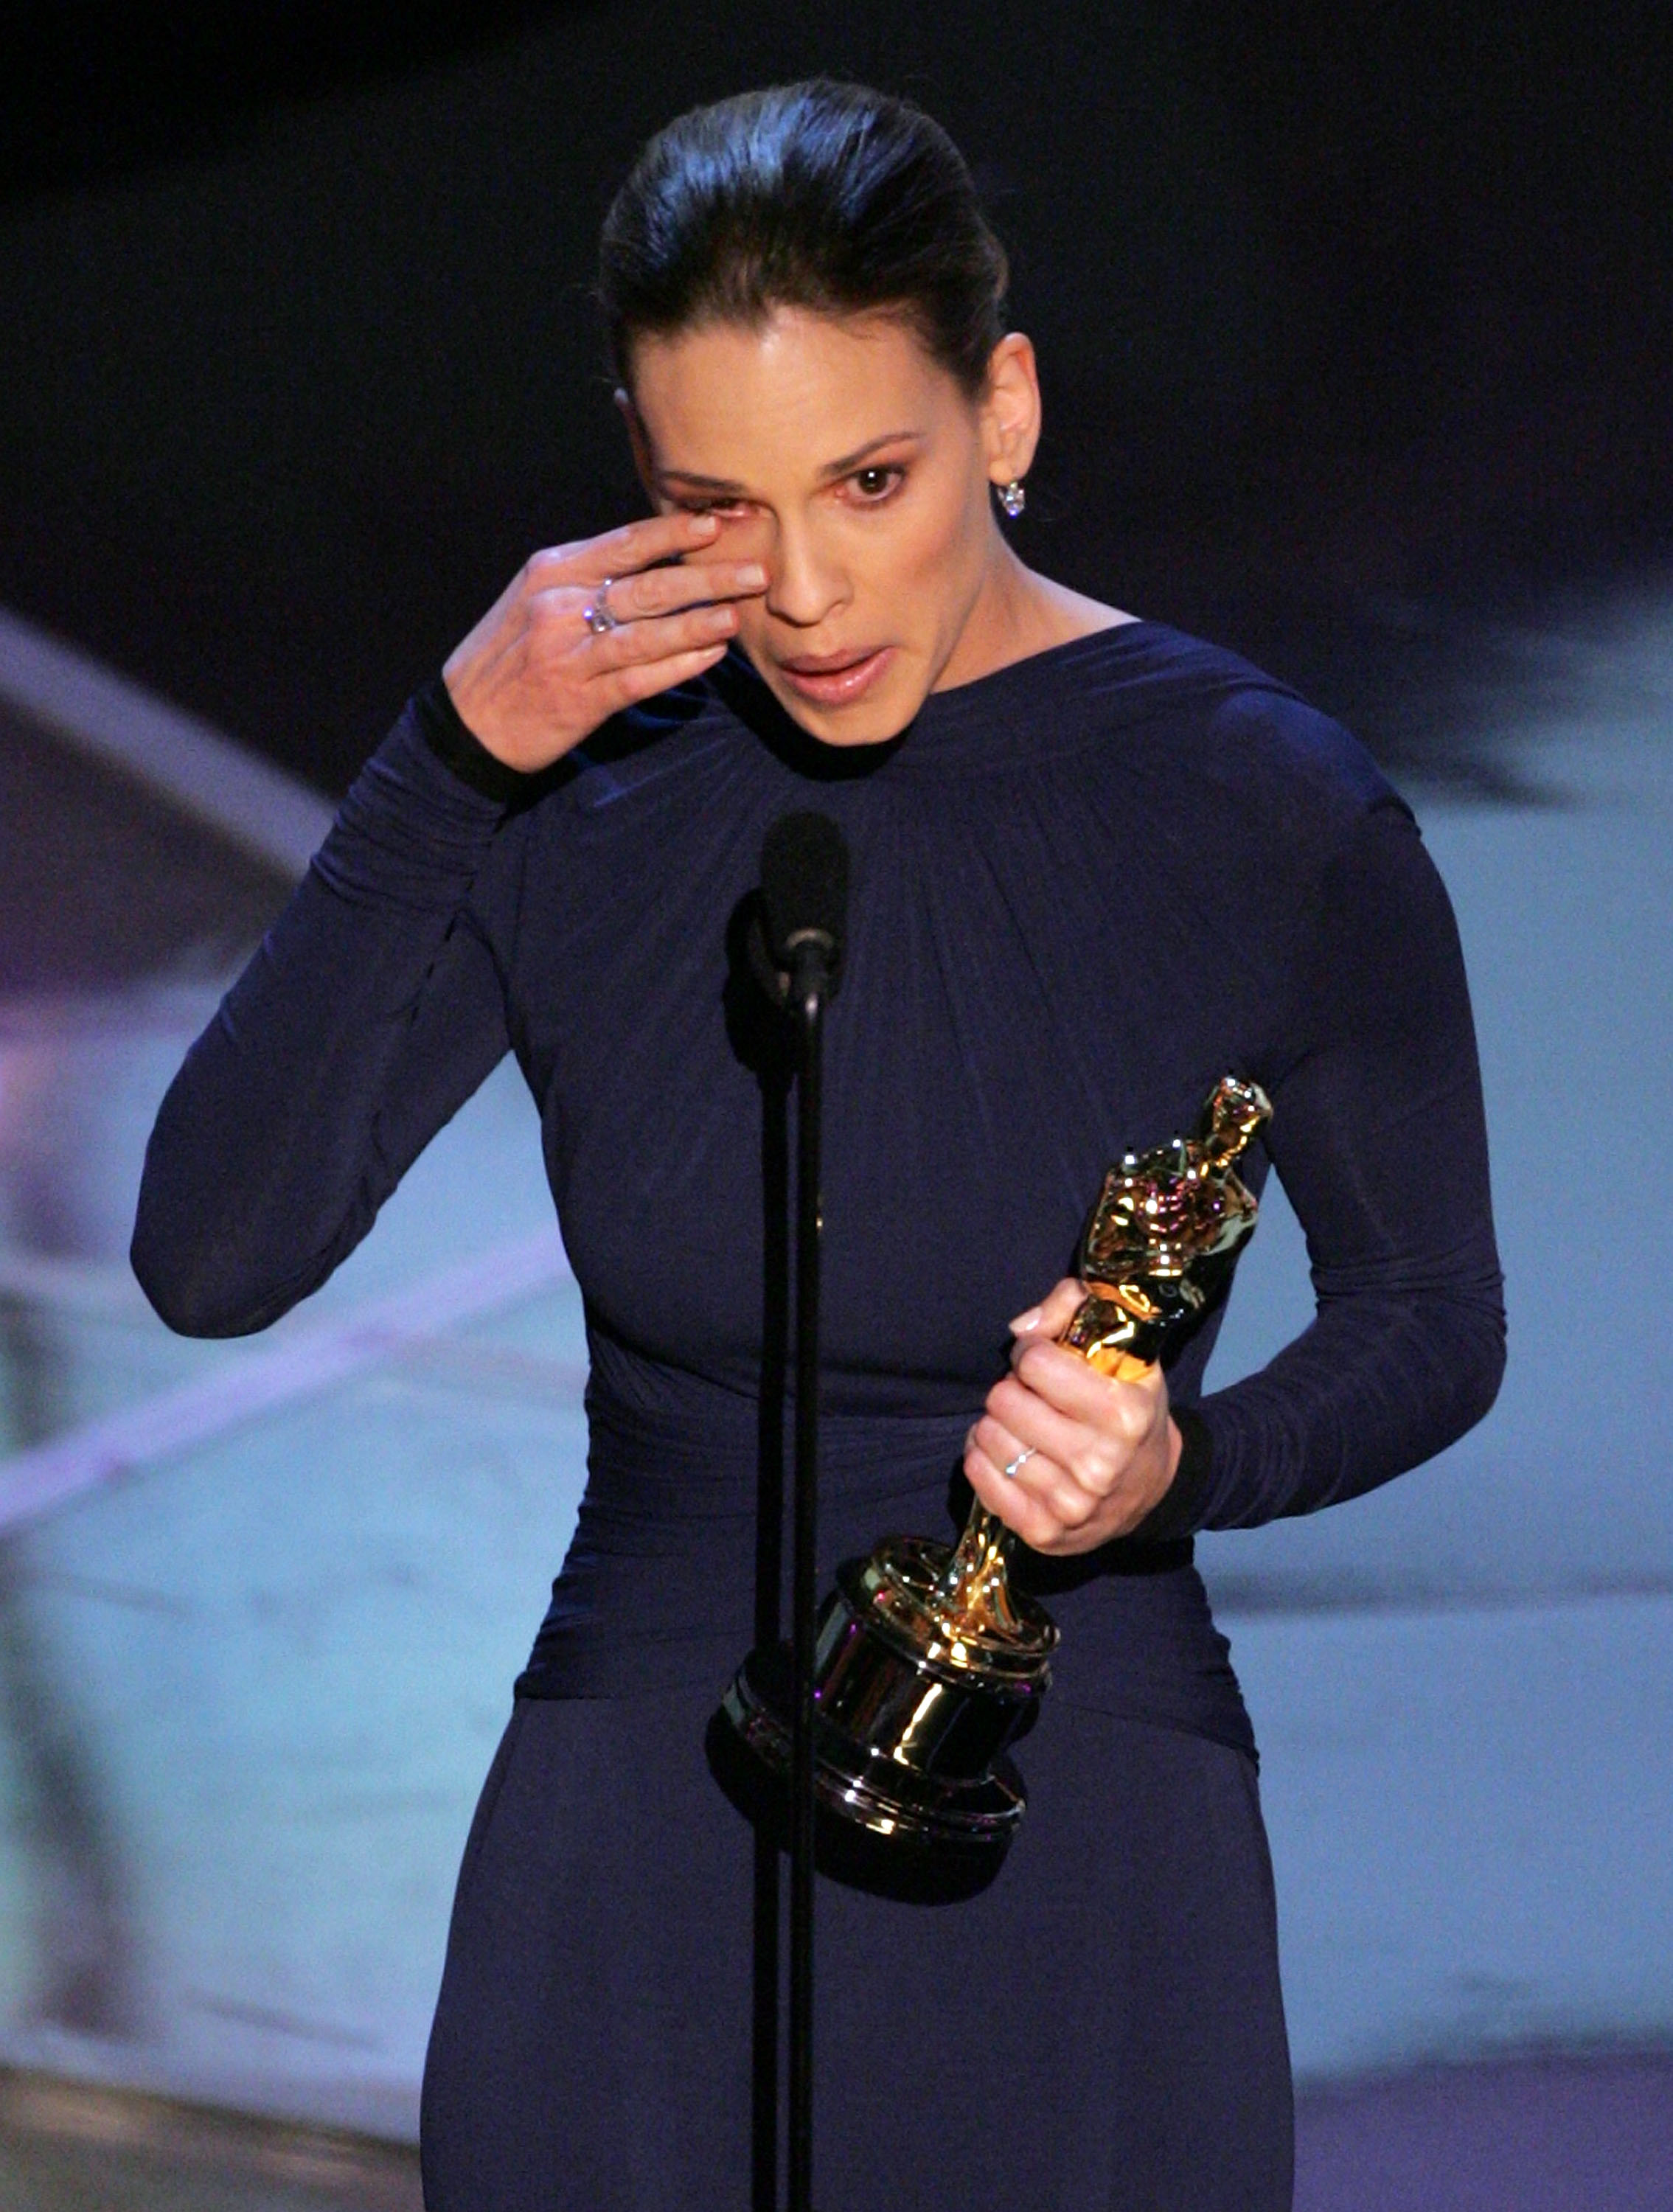 Hilary Swank recevant son prix lors de la 77ème cérémonie des Oscars en 2005 à Hollywood | Source : Getty Images